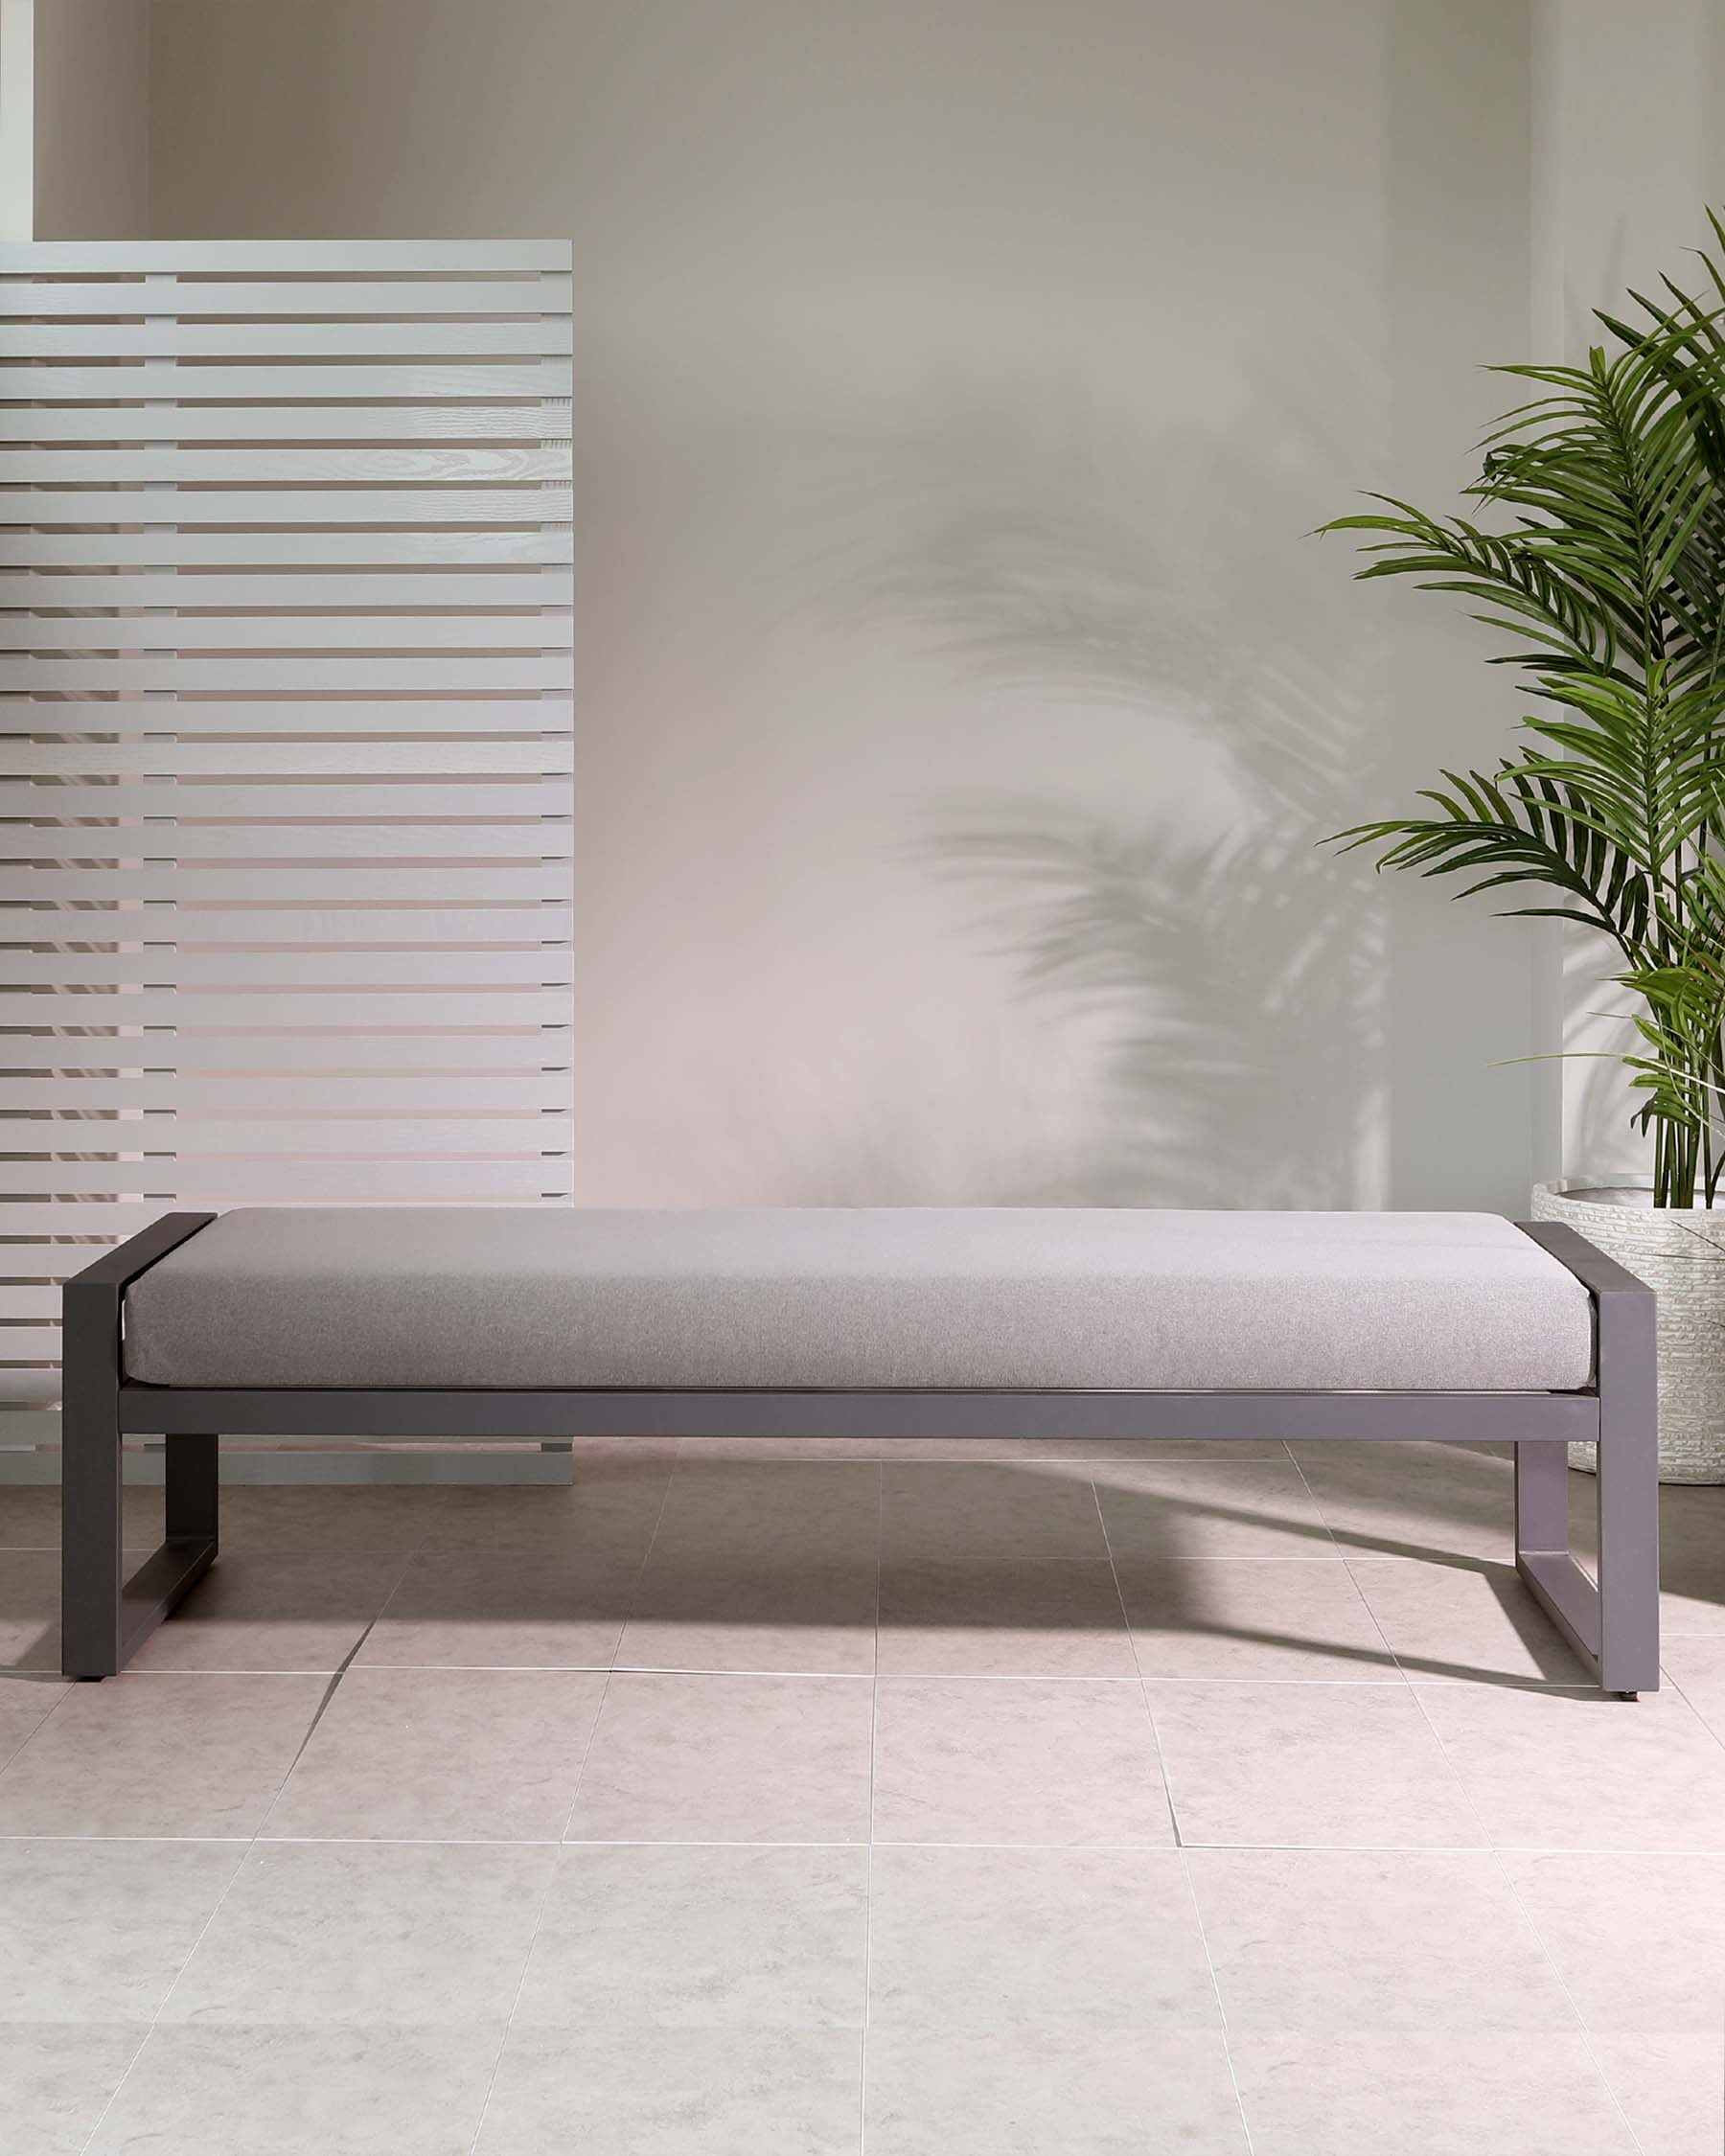 Verano Grey 3 Seater Backless Garden Sofa Bench